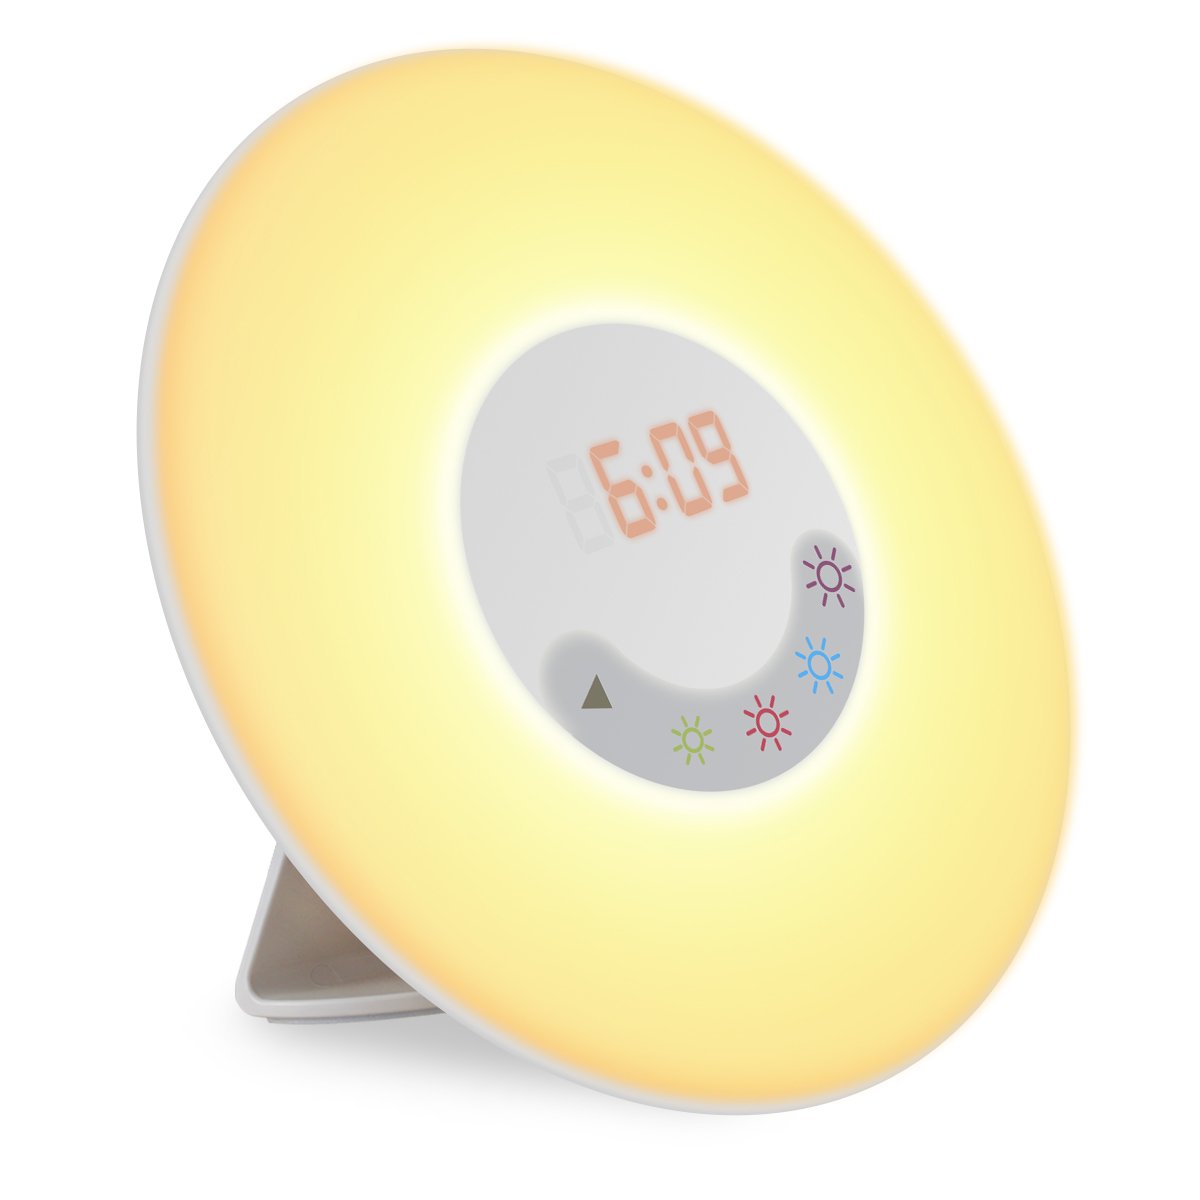 soft light alarm clock Belatina type a